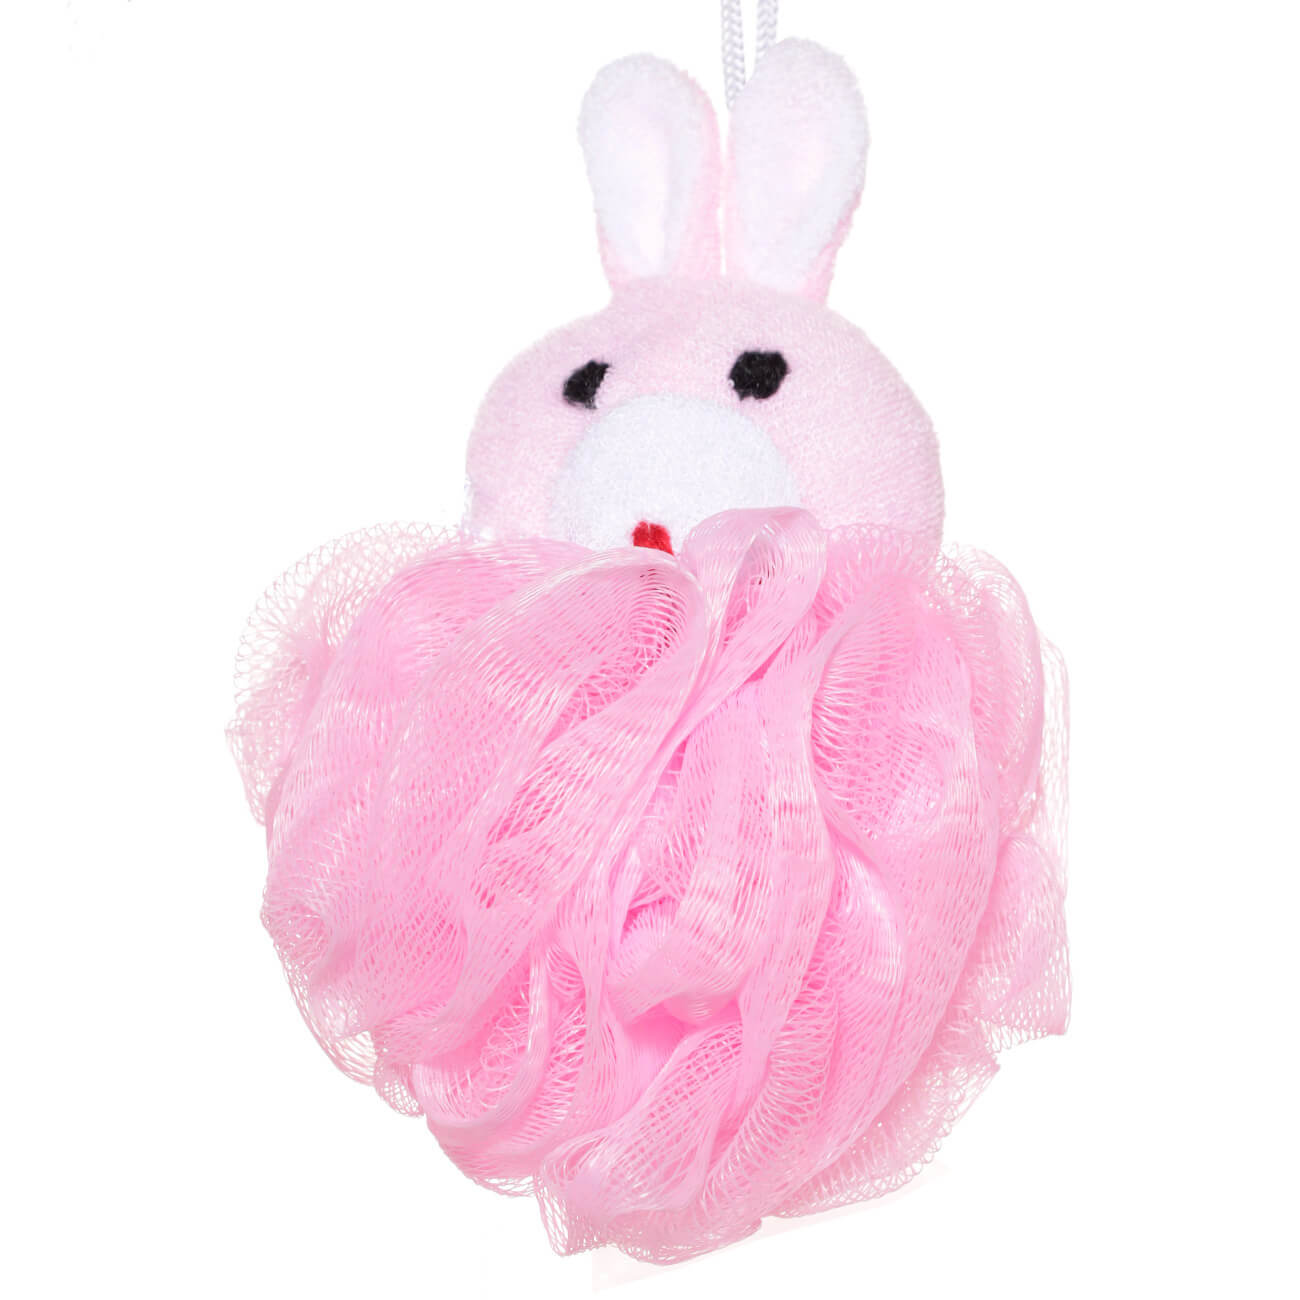 Мочалка для мытья тела, 12 см, детская, полиэтилен/полиэстер, розовая, Заяц, Rabbit мочалка детская махровая